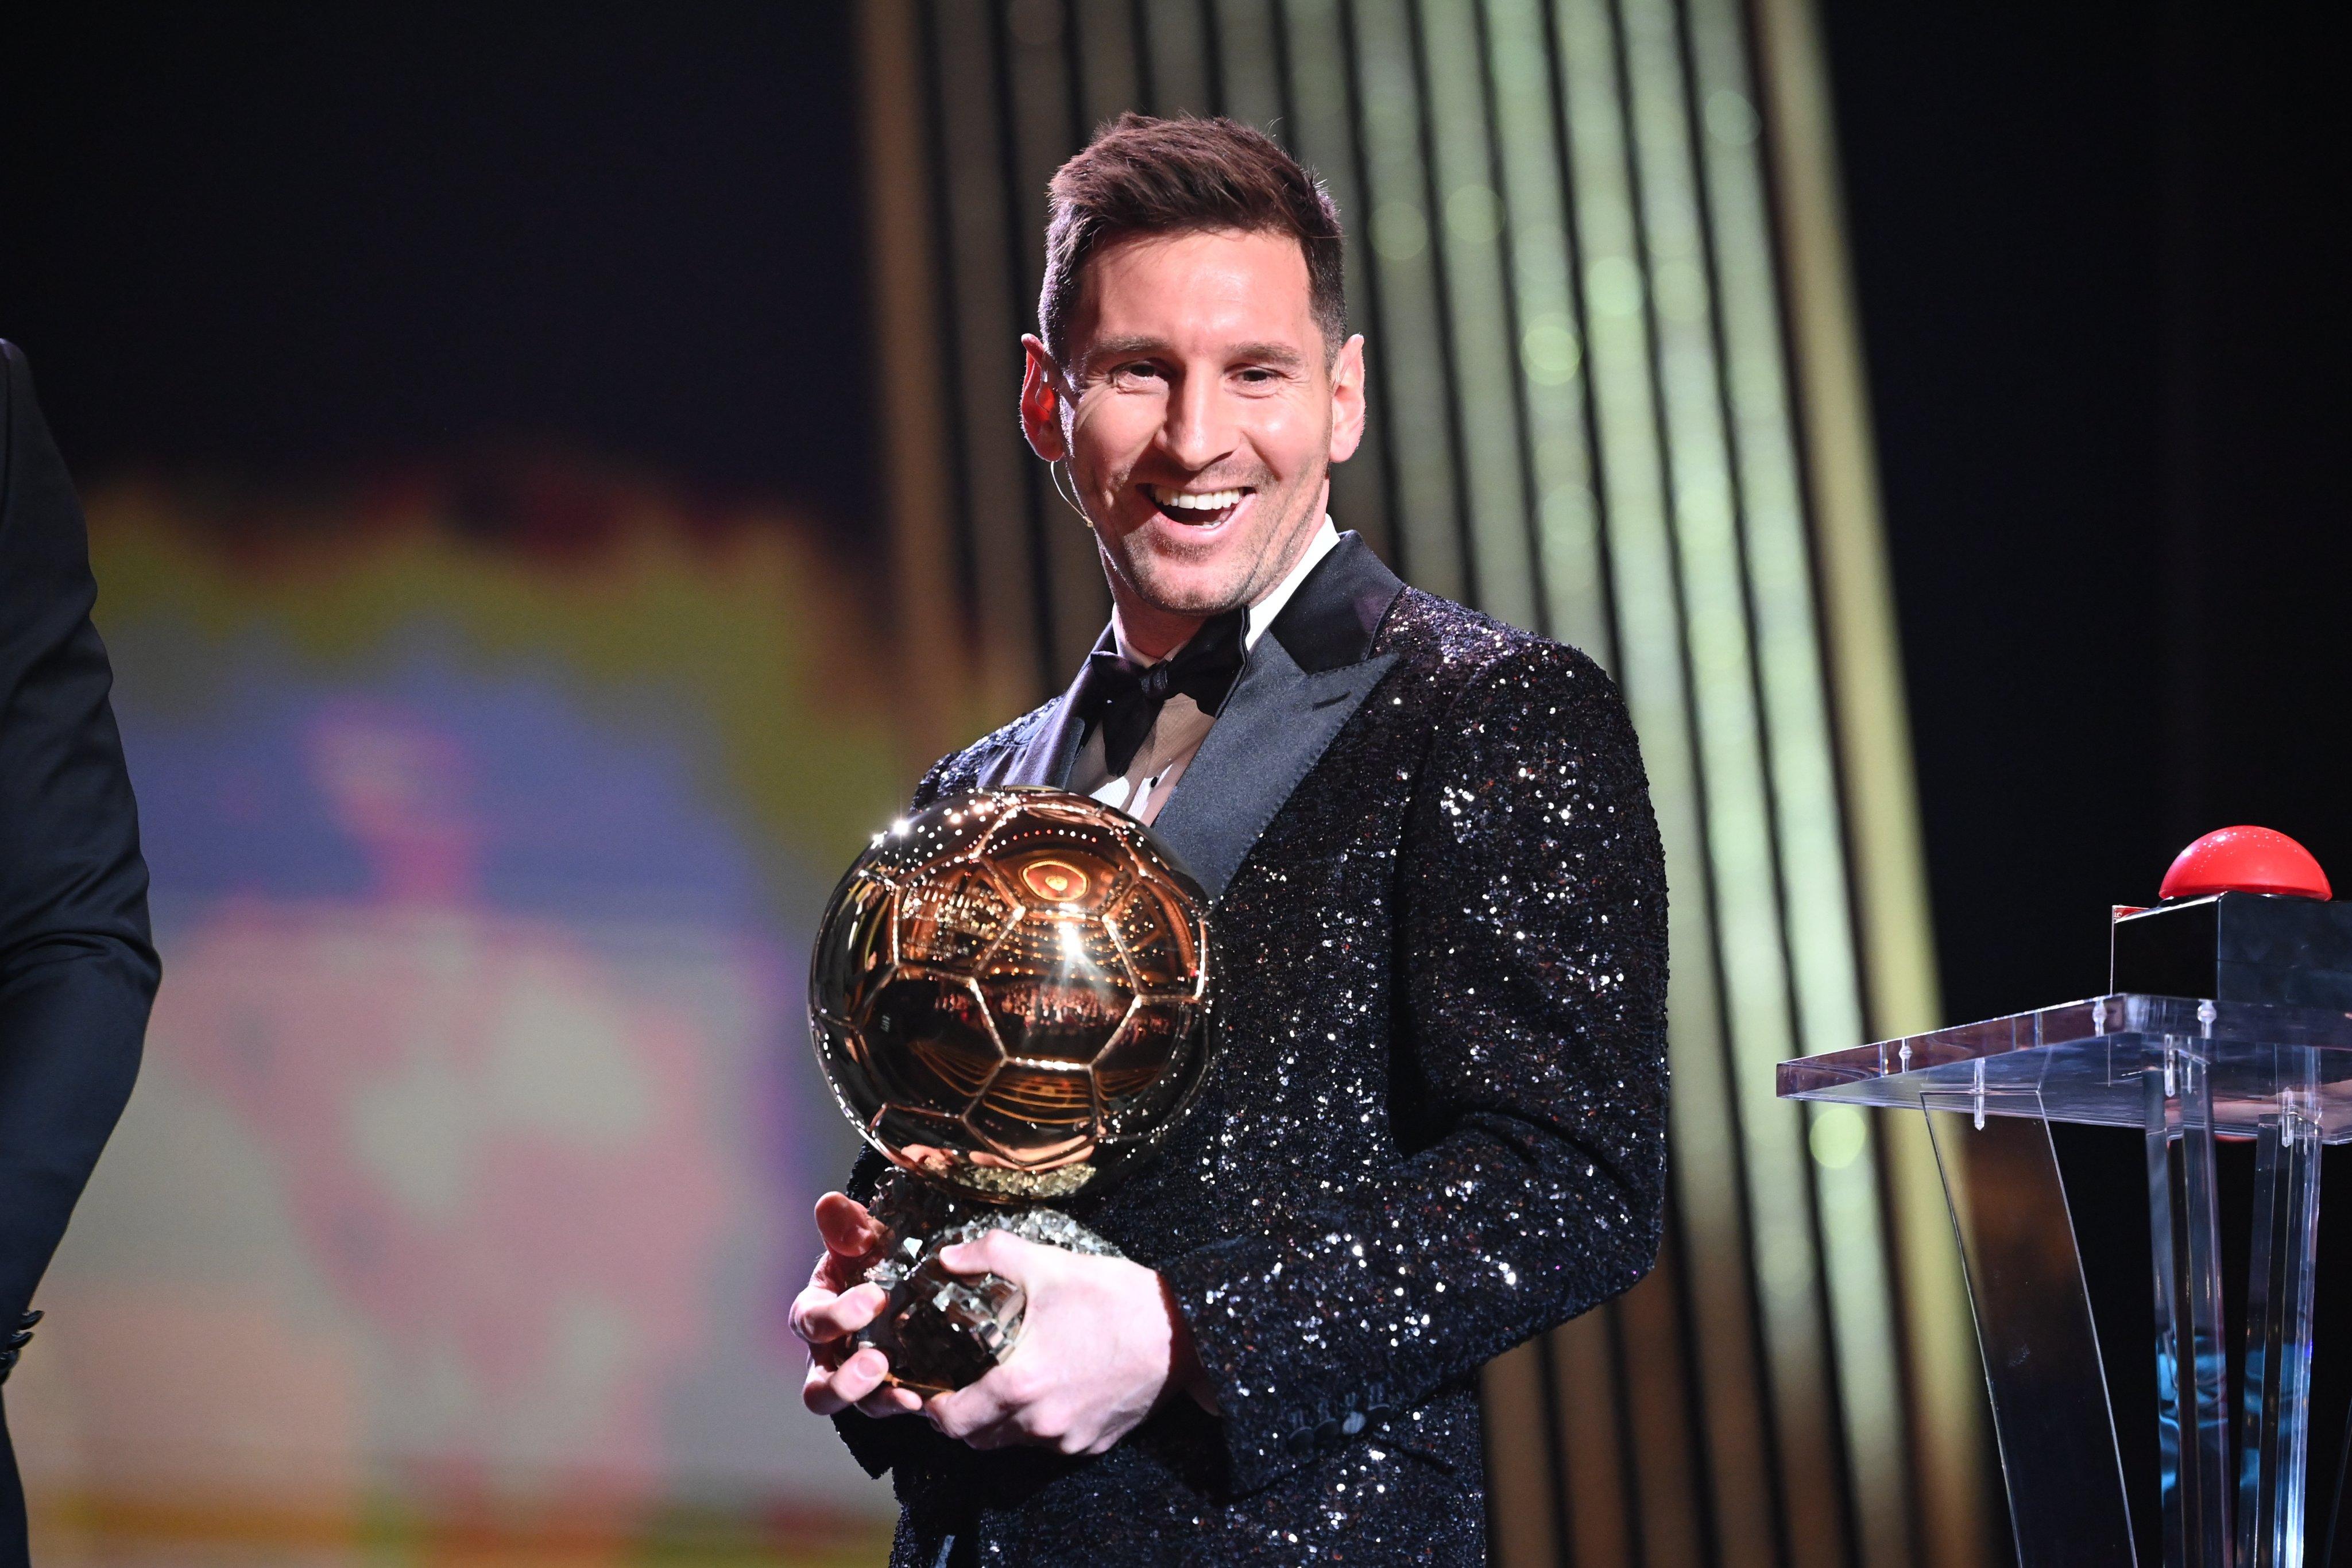 Messi - chàng trai vĩ đại của bóng đá đã được trao Quả bóng vàng lần thứ 7! Hãy xem bức ảnh này để tìm hiểu về những thành tích đầy ấn tượng mà anh đạt được trong sự nghiệp! Cùng với đó, Bạn sẽ tìm thấy những khoảnh khắc tuyệt vời của anh cùng đội bóng của mình.